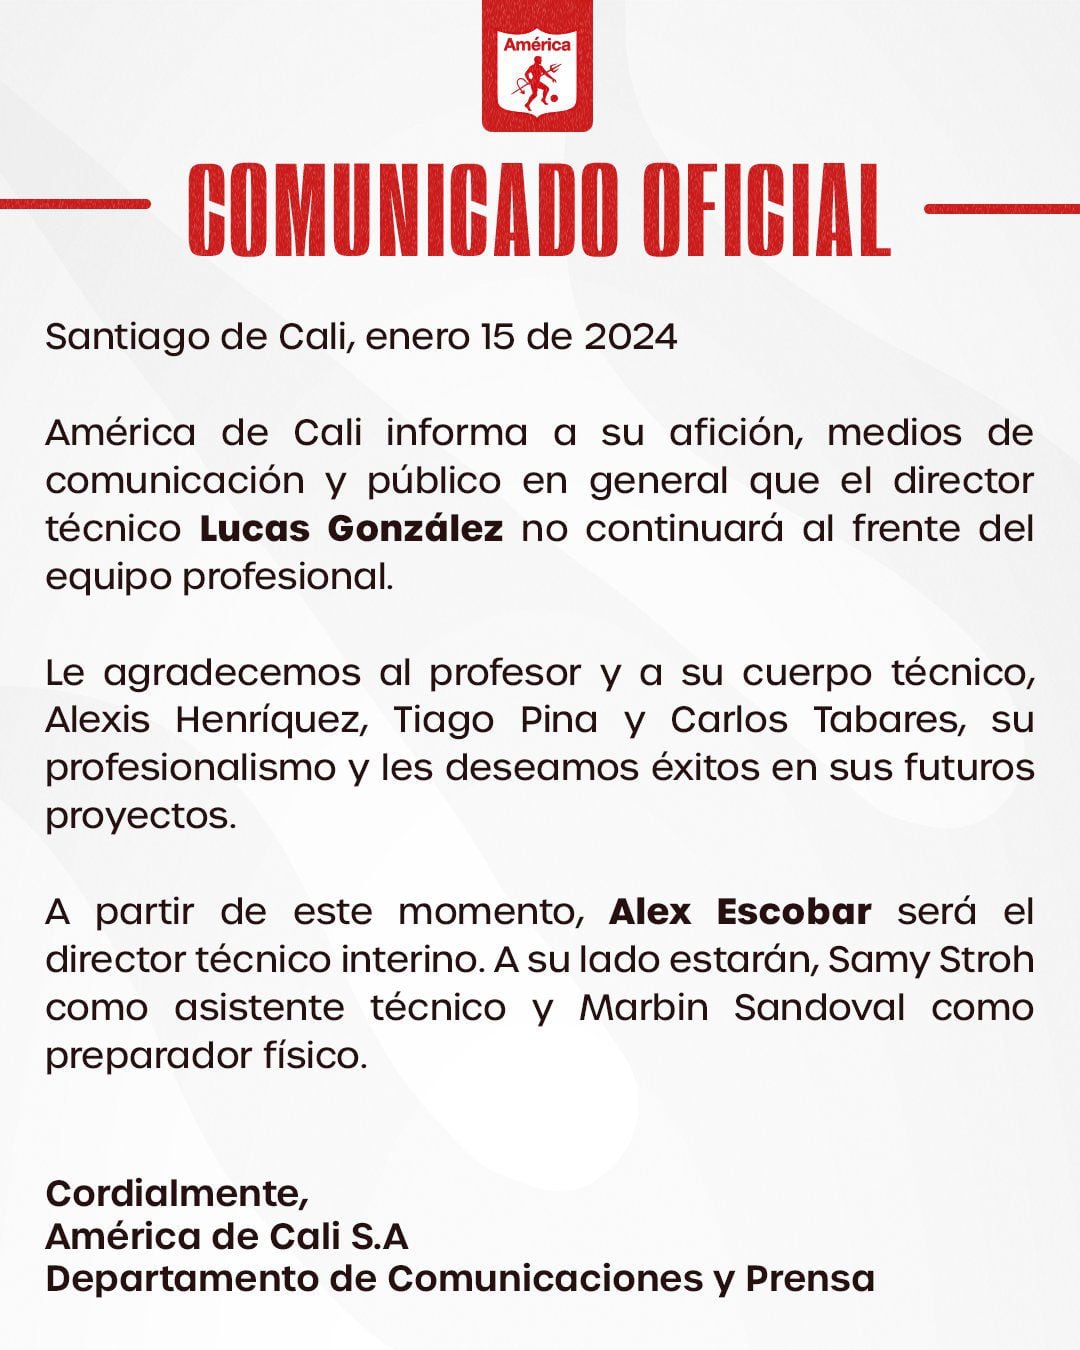 Comunicado oficial del América de Cali donde anuncia la no continuidad de Lucas González en el cargo de director técnico.